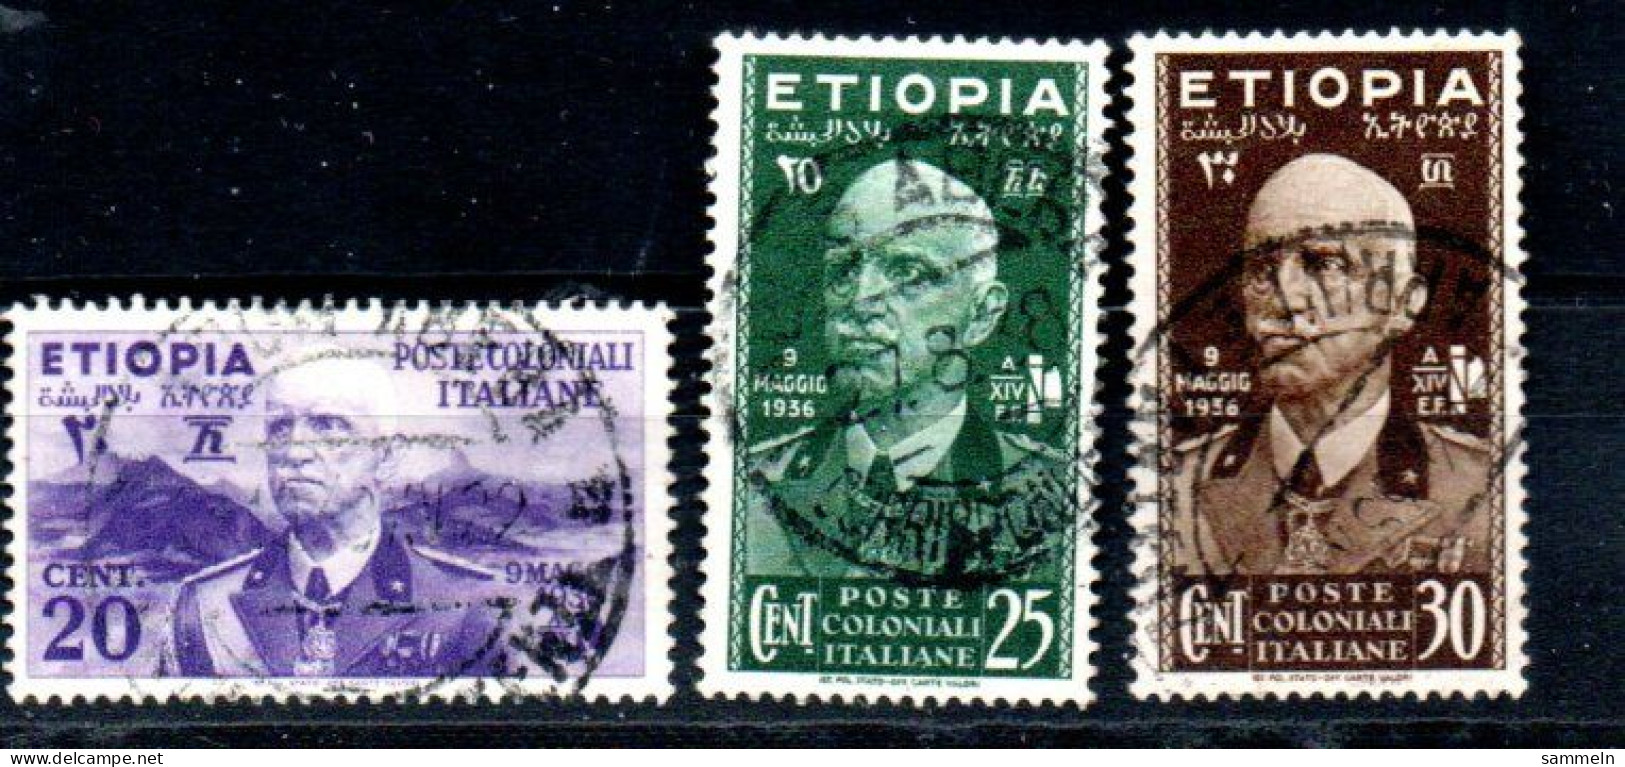 ITALIENISCH-ÄTHIOPIEN 2, 3, 4 Canc Victor Emanuel III Ambe ITALIAN-ETHIOPIE -ETHIOPIA - Aethiopien